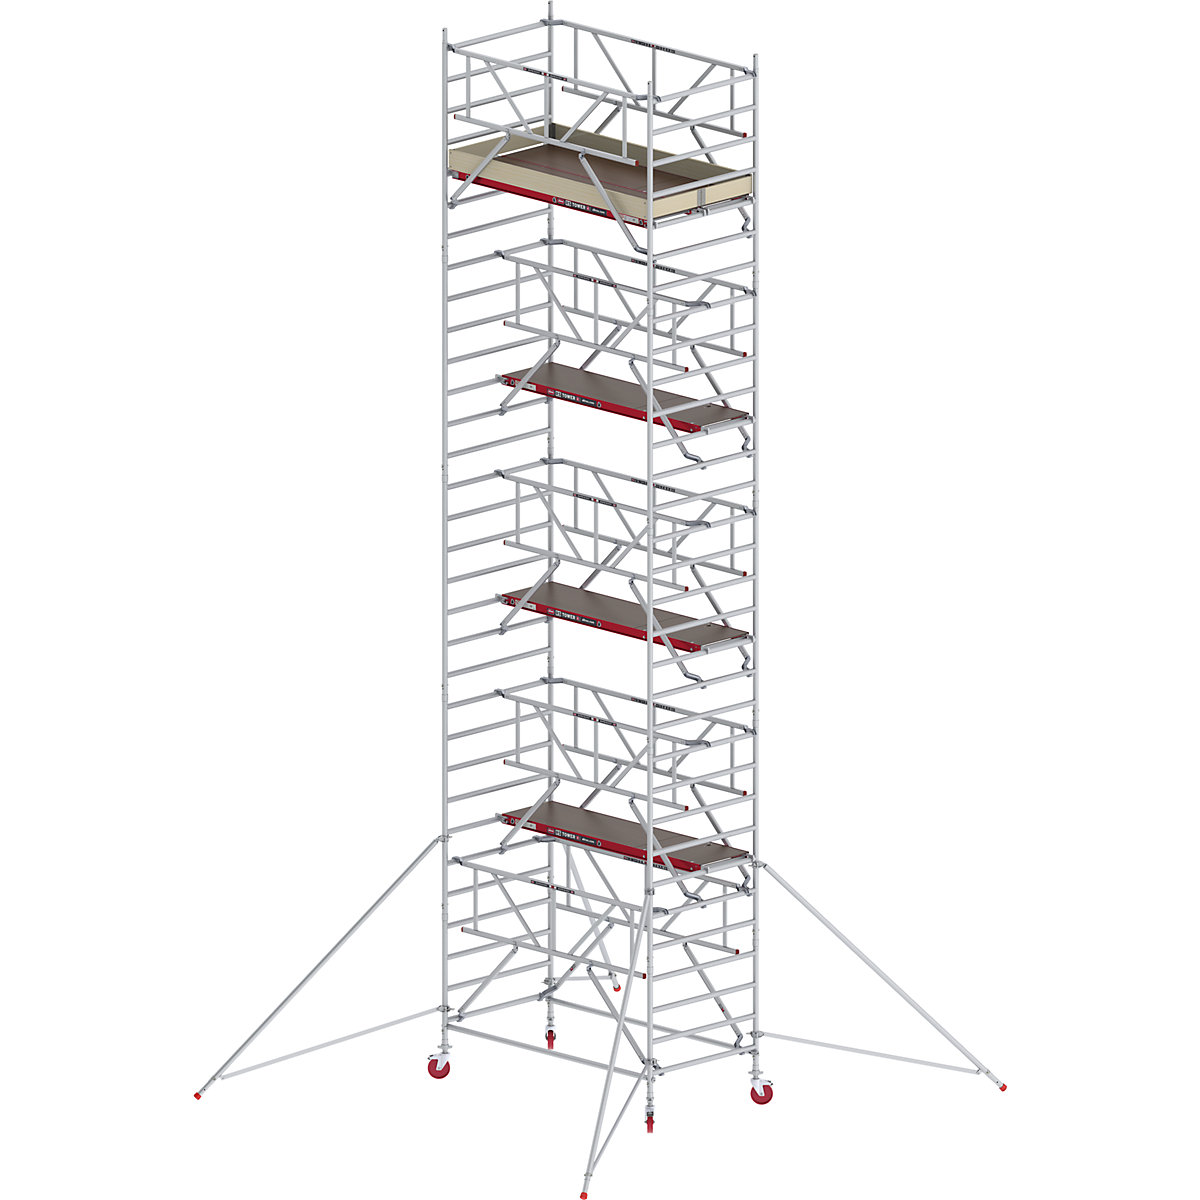 Fahrgerüst RS TOWER 42 breit mit Safe-Quick® Altrex, Holzplattform, Länge 2,45 m, Arbeitshöhe 10,20 m